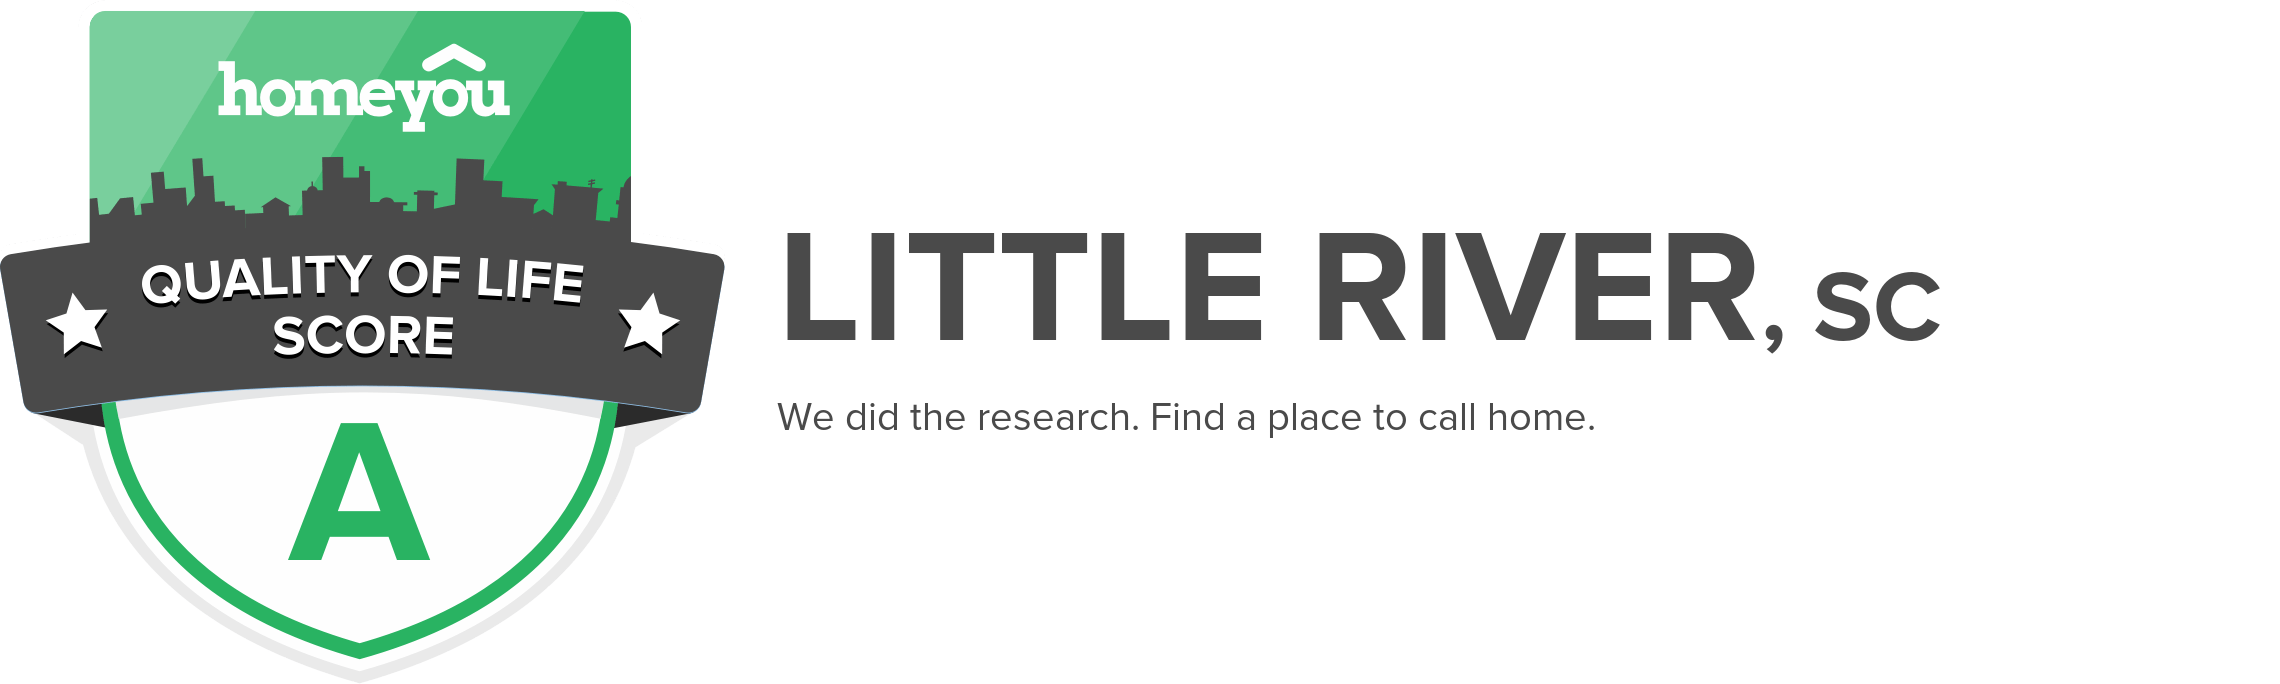 Little River, SC